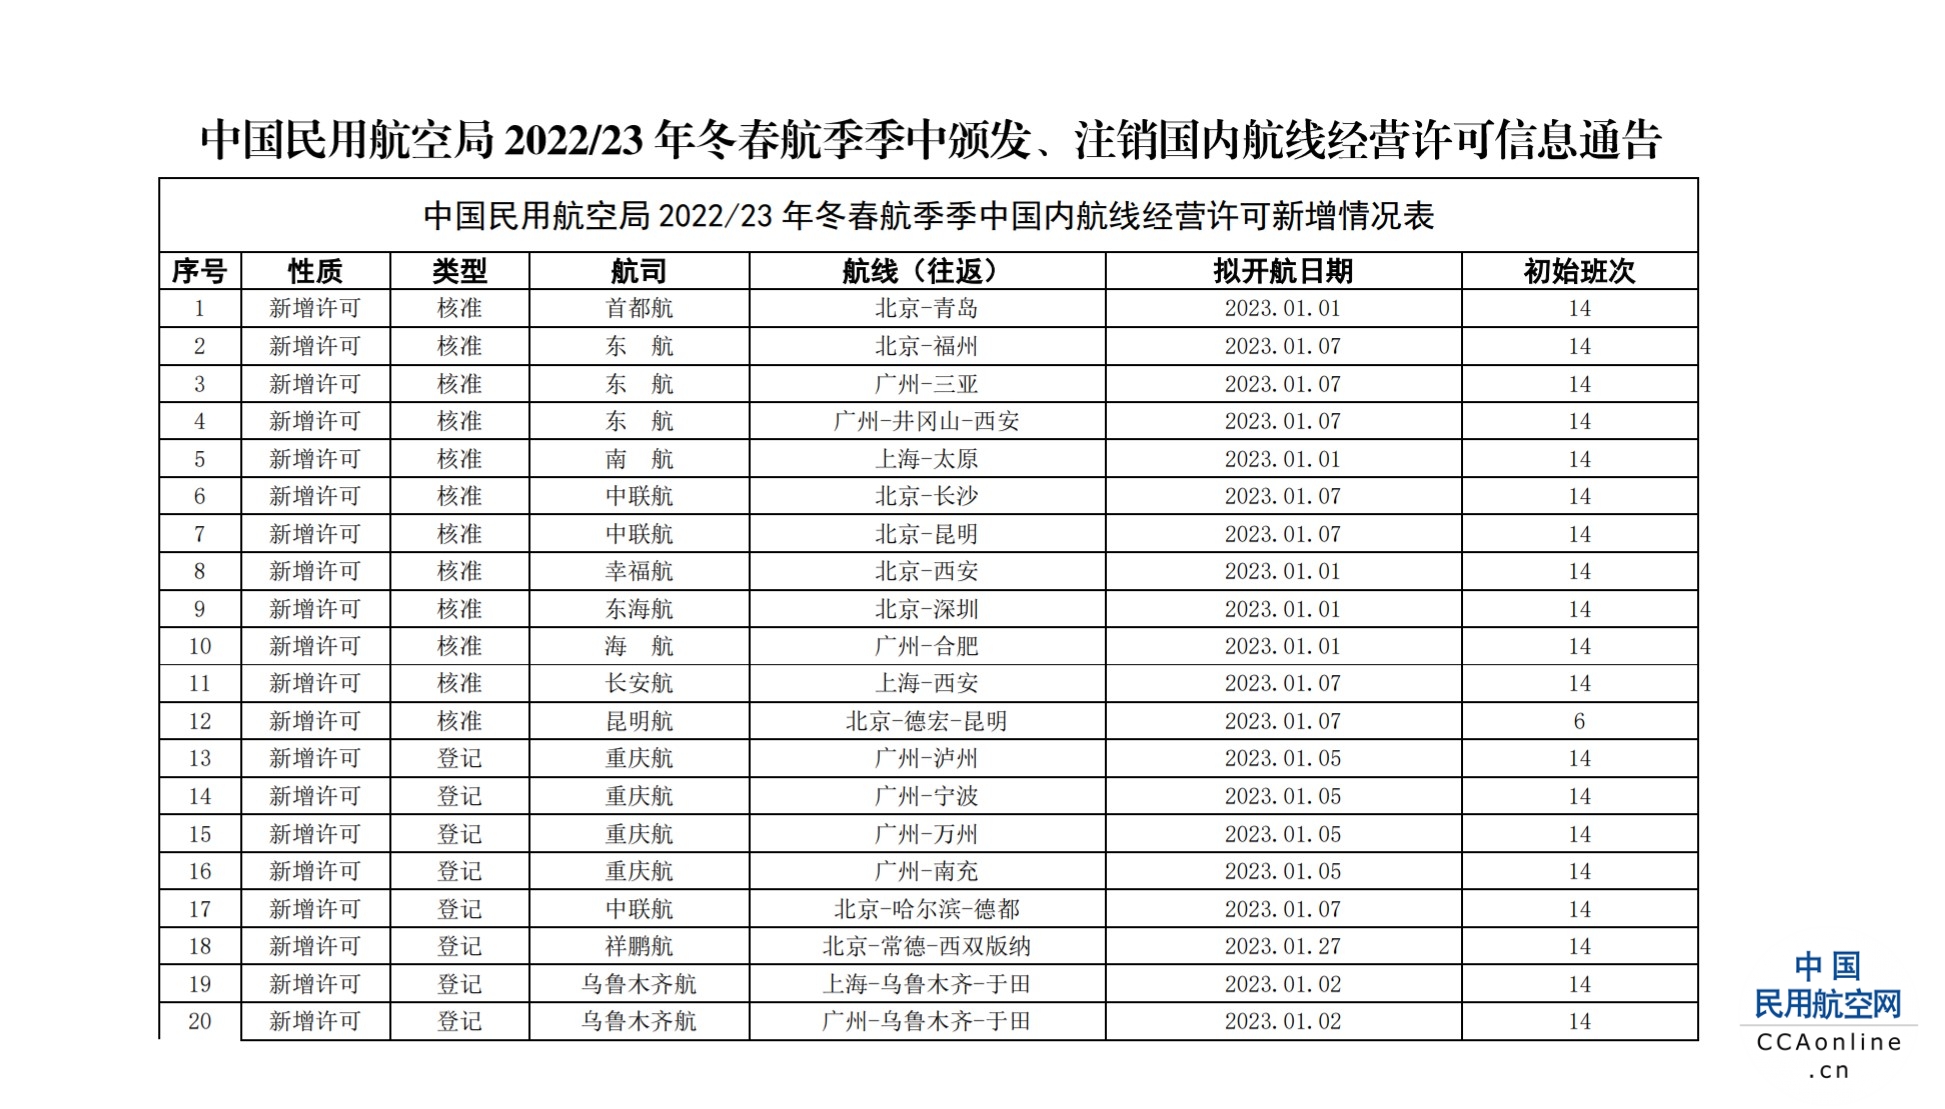 中国民用航空局2022/23年冬春航季季中颁发、注销国内航线经营许可信息通告